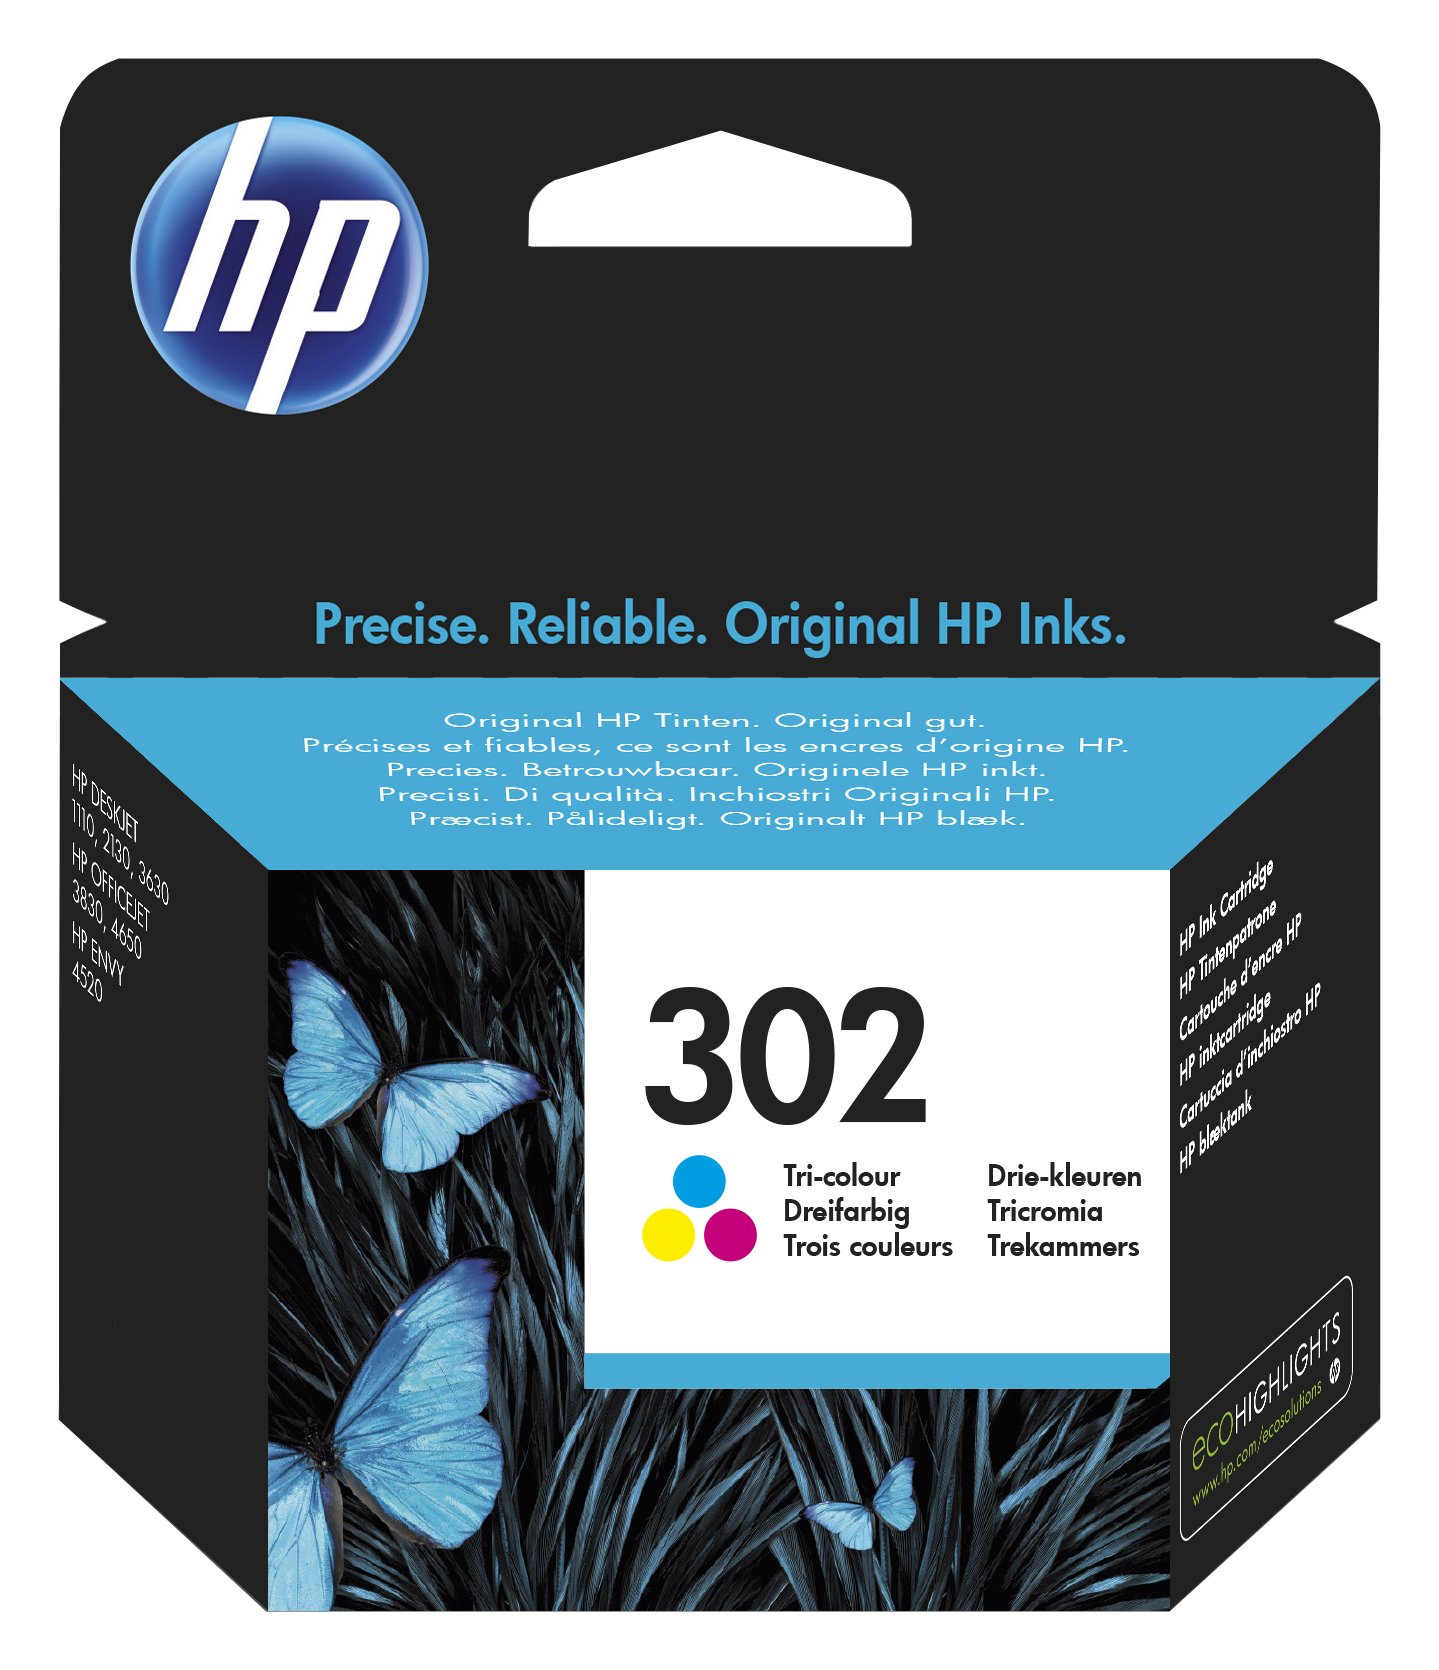 HP 302 Tri-color Original Ink cartridge